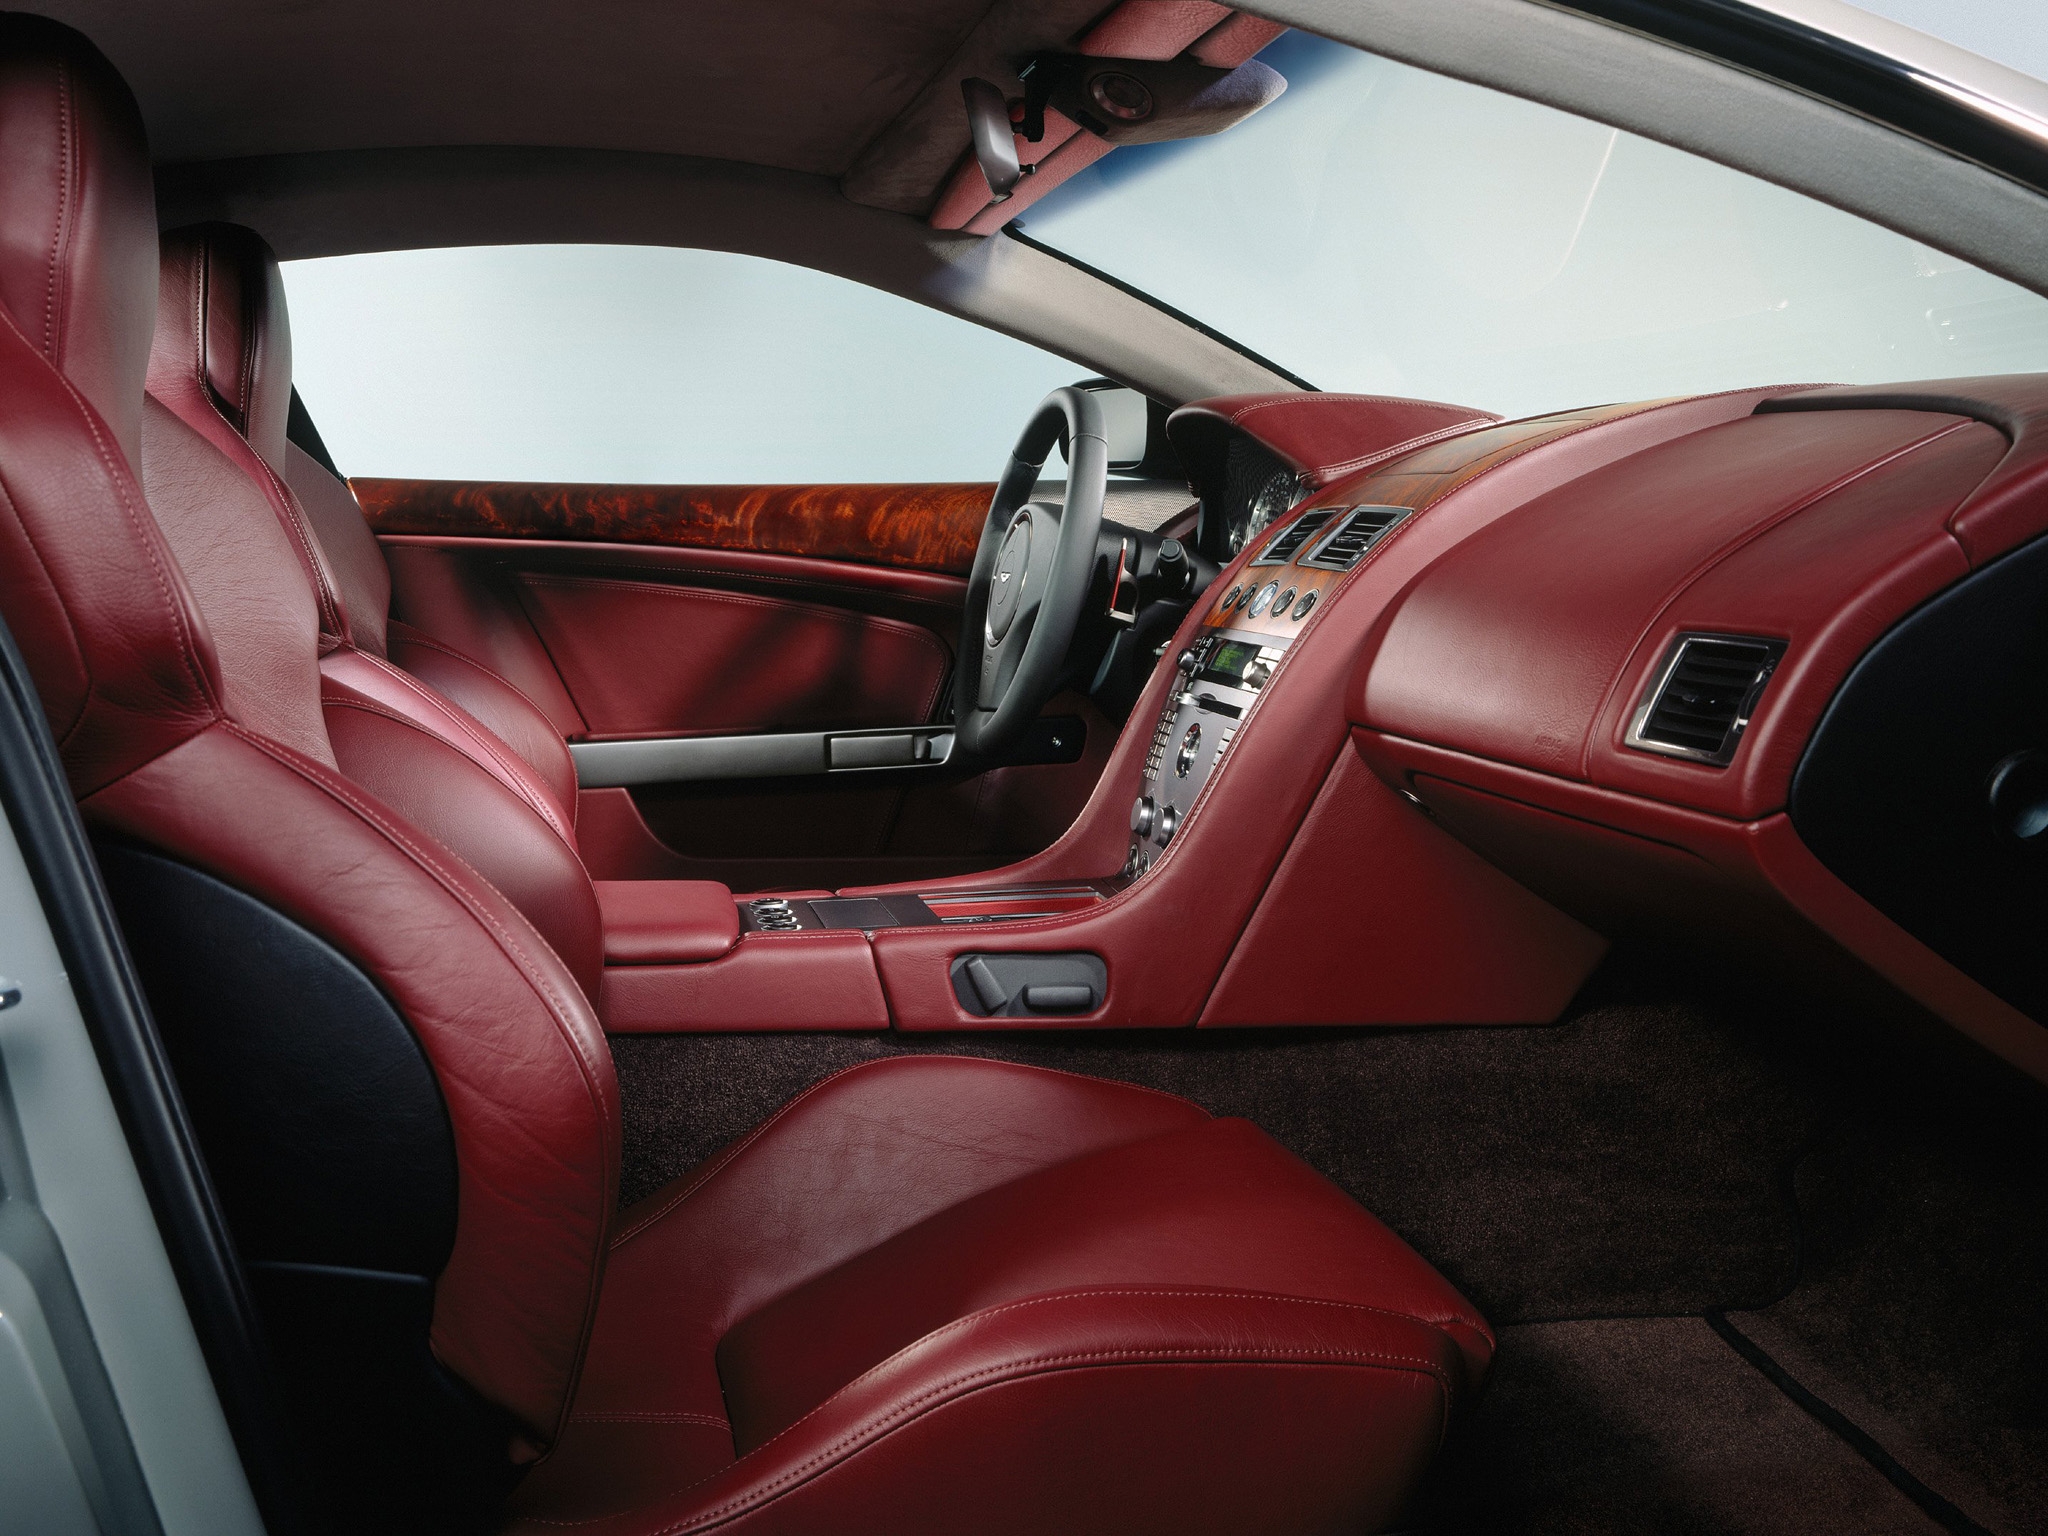 steering wheel, 2004, rudder, db9, salon, aston martin, interior, red, cars